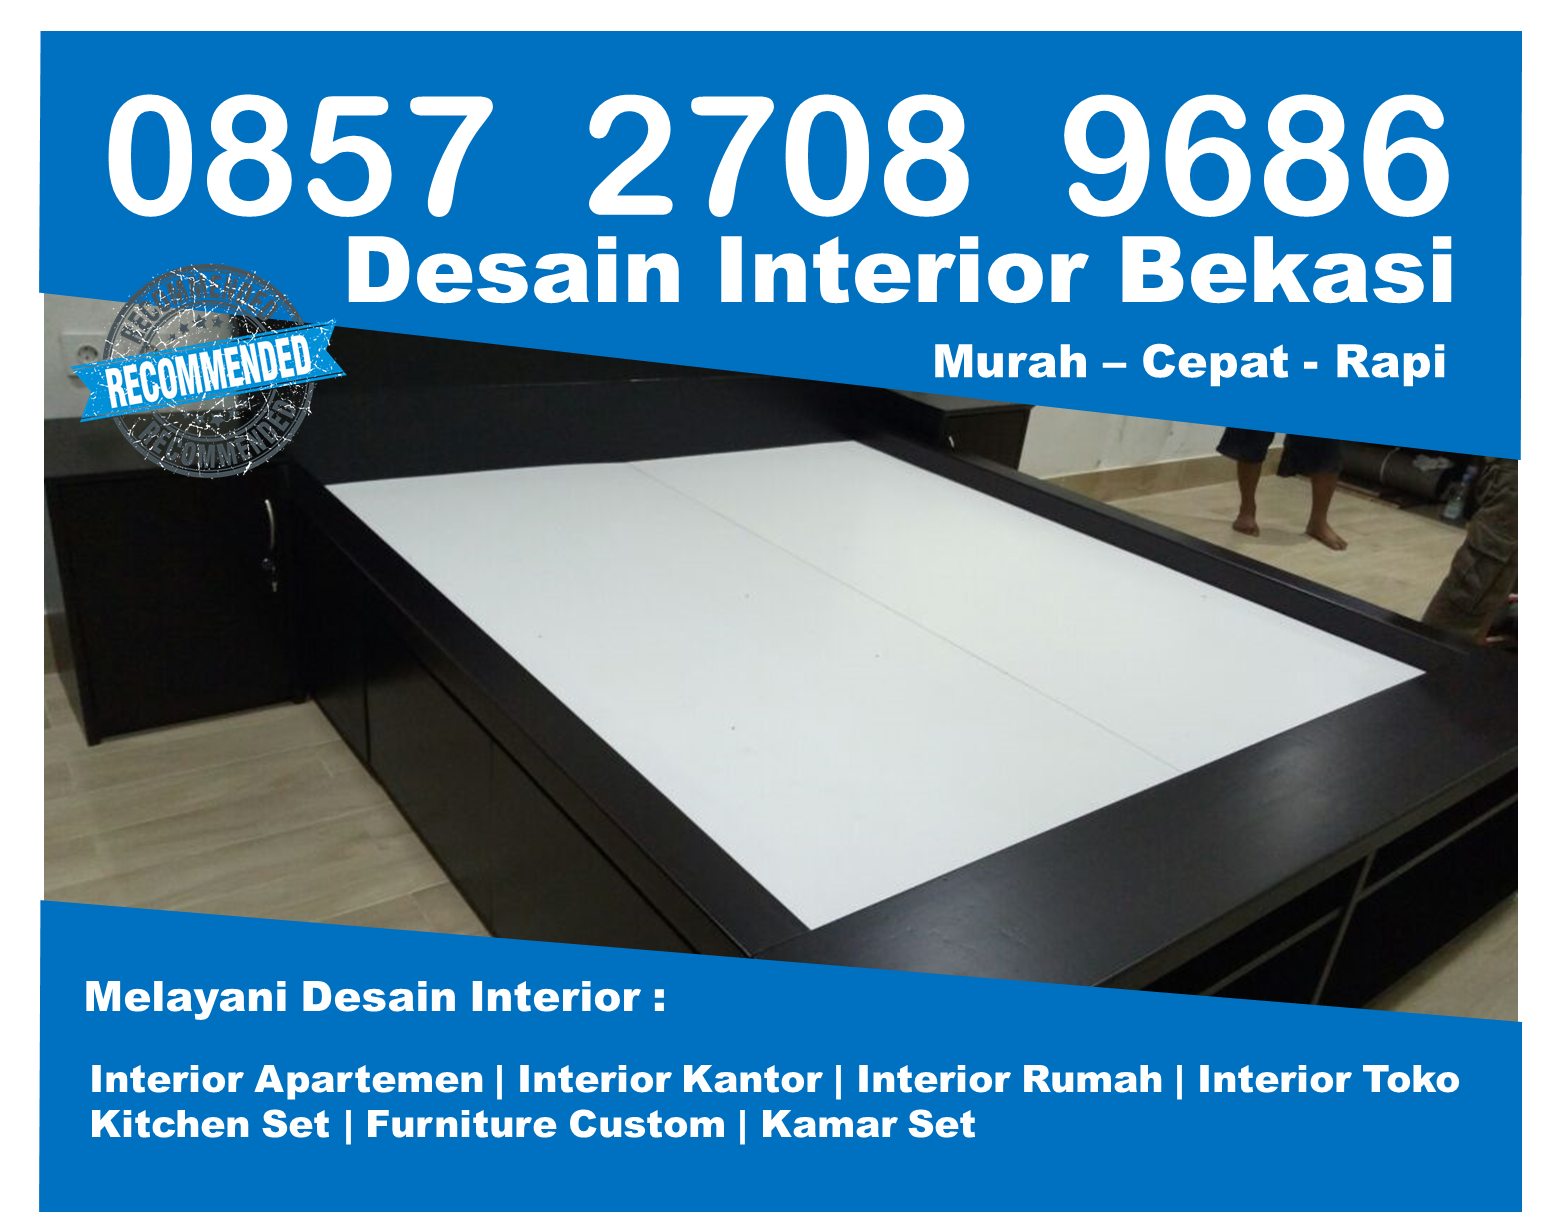 Telp 0857 2708 9686 Indosat Contoh Desain Interior Apartemen